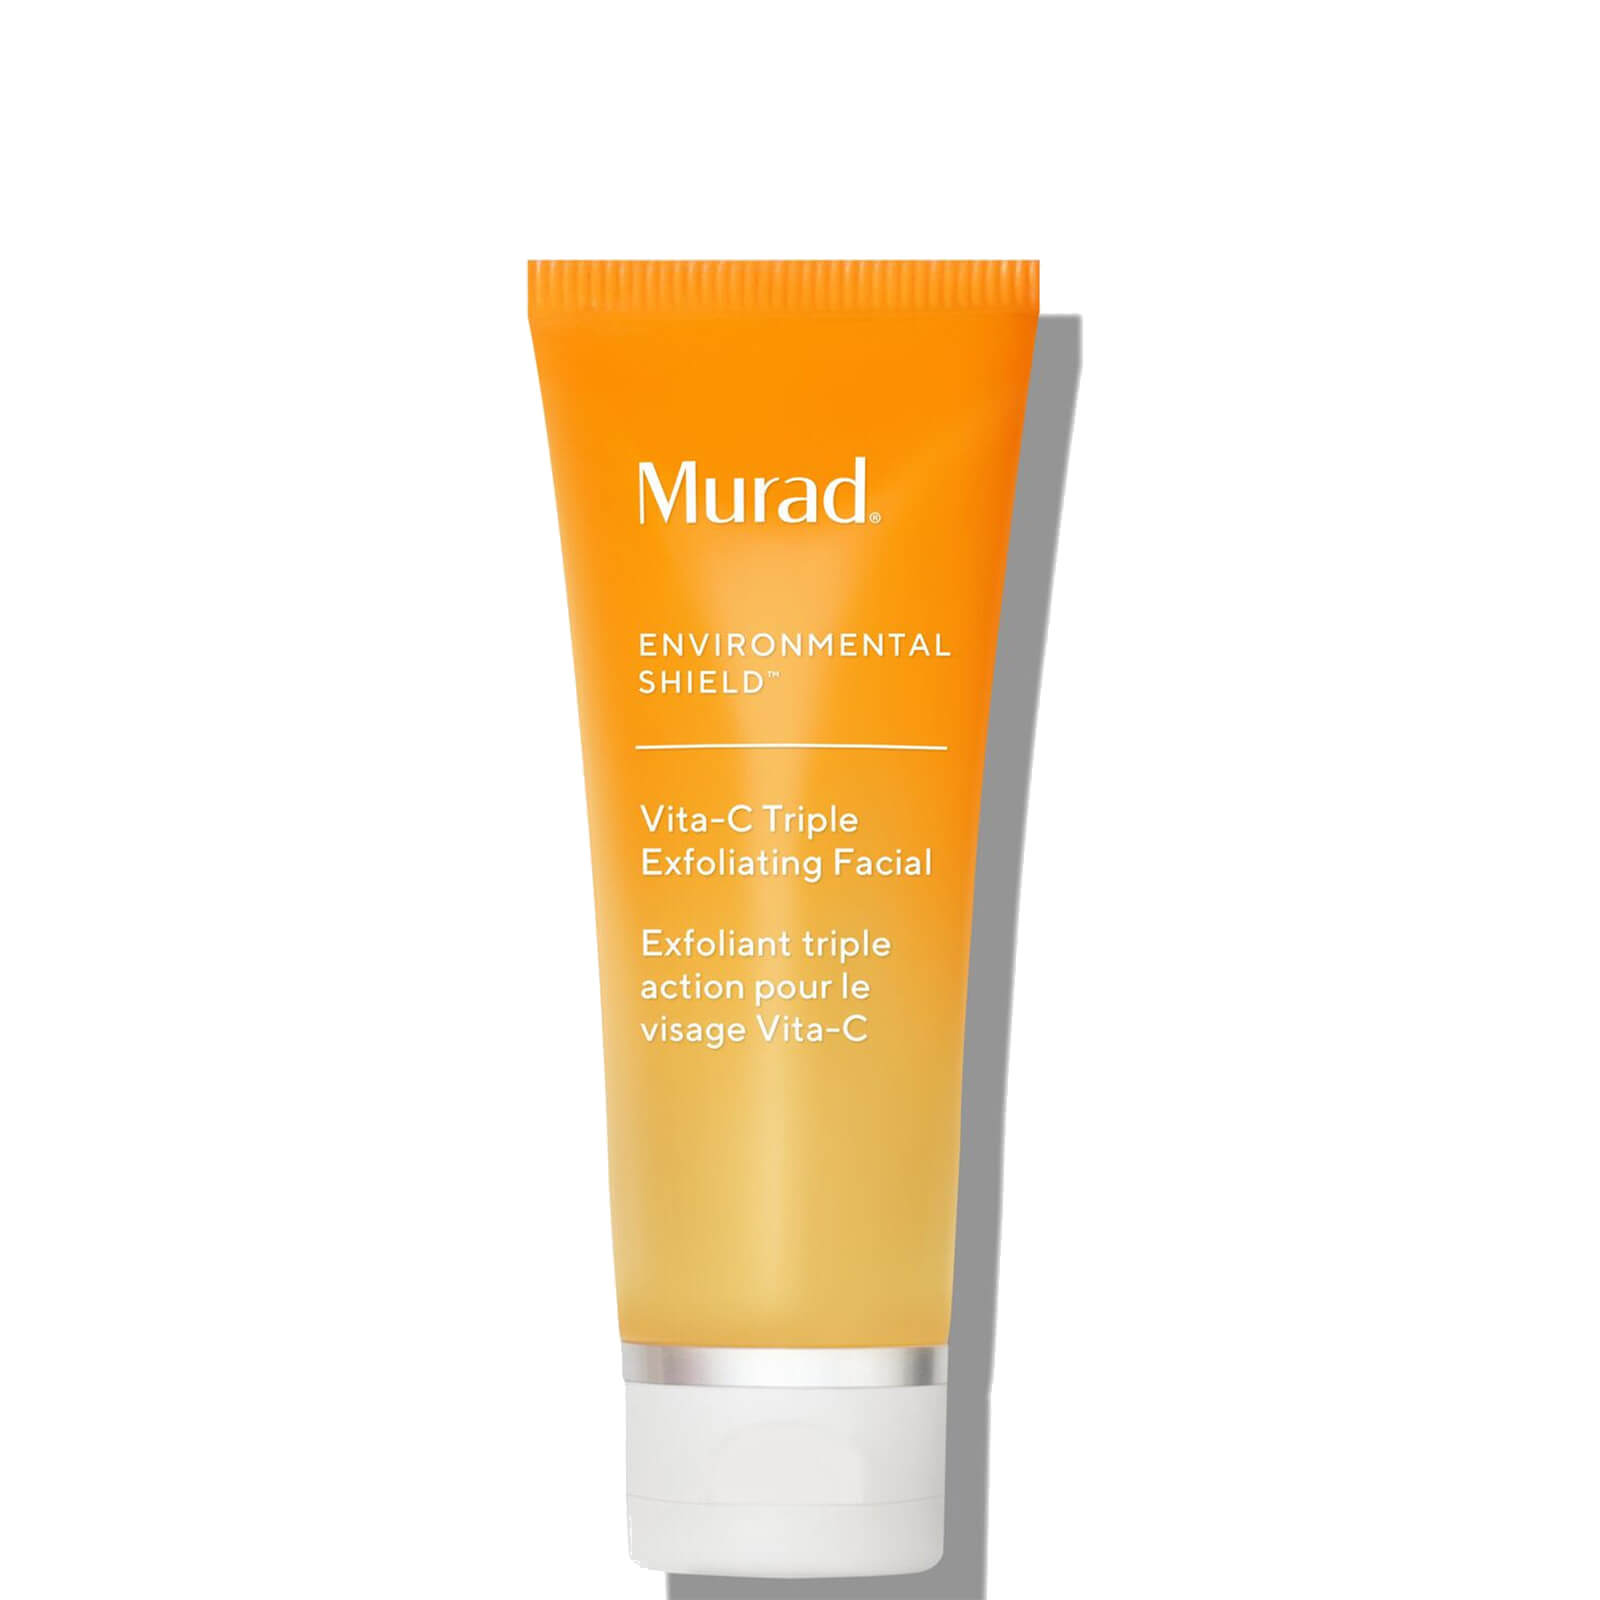 Murad Environmental Shield Vita-c Triple Exfoliating Facial, 2.7-oz.